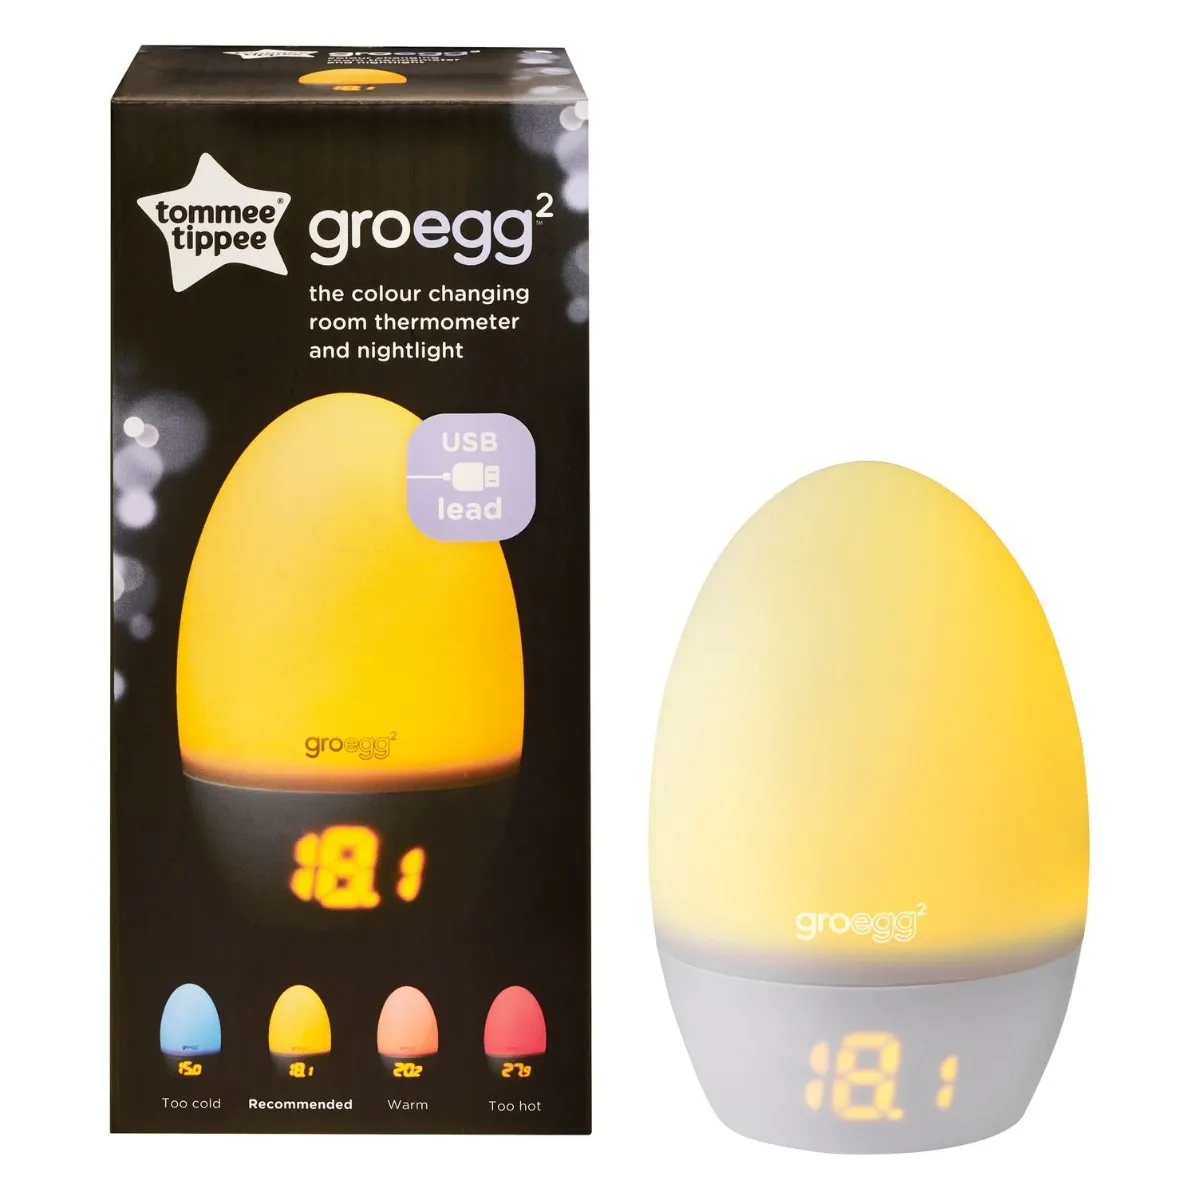 Tommee Tippee Gro Egg2 teploměr a noční světlo